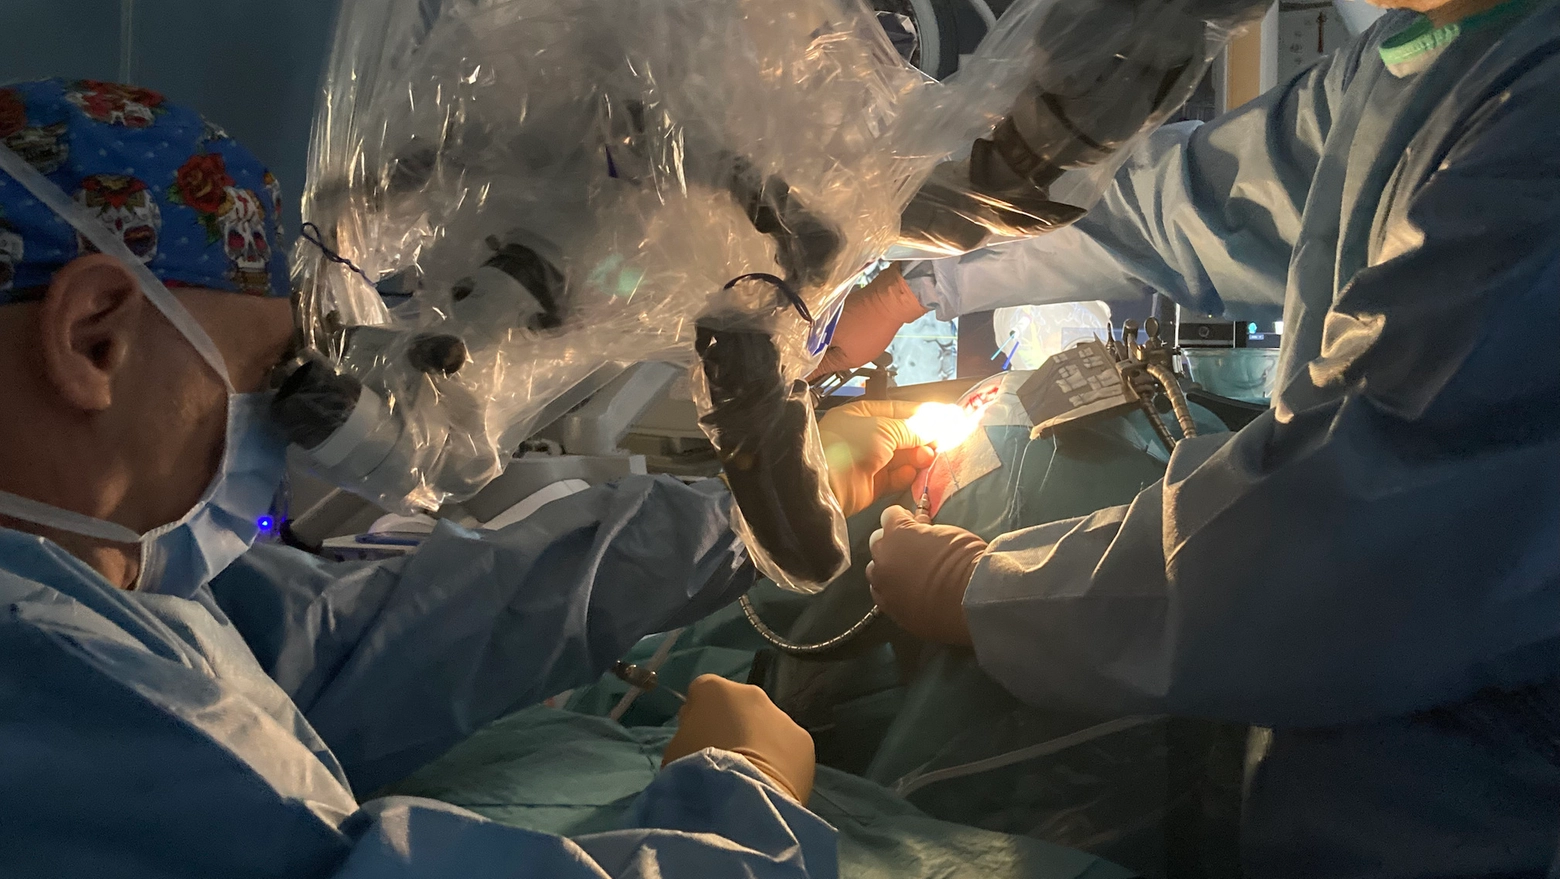 La prima paziente dell’équipe di neurochirurgia dell’ospedale di Cremona è stata una donna di 60 anni: “Questo intervento era l’unica soluzione possibile”